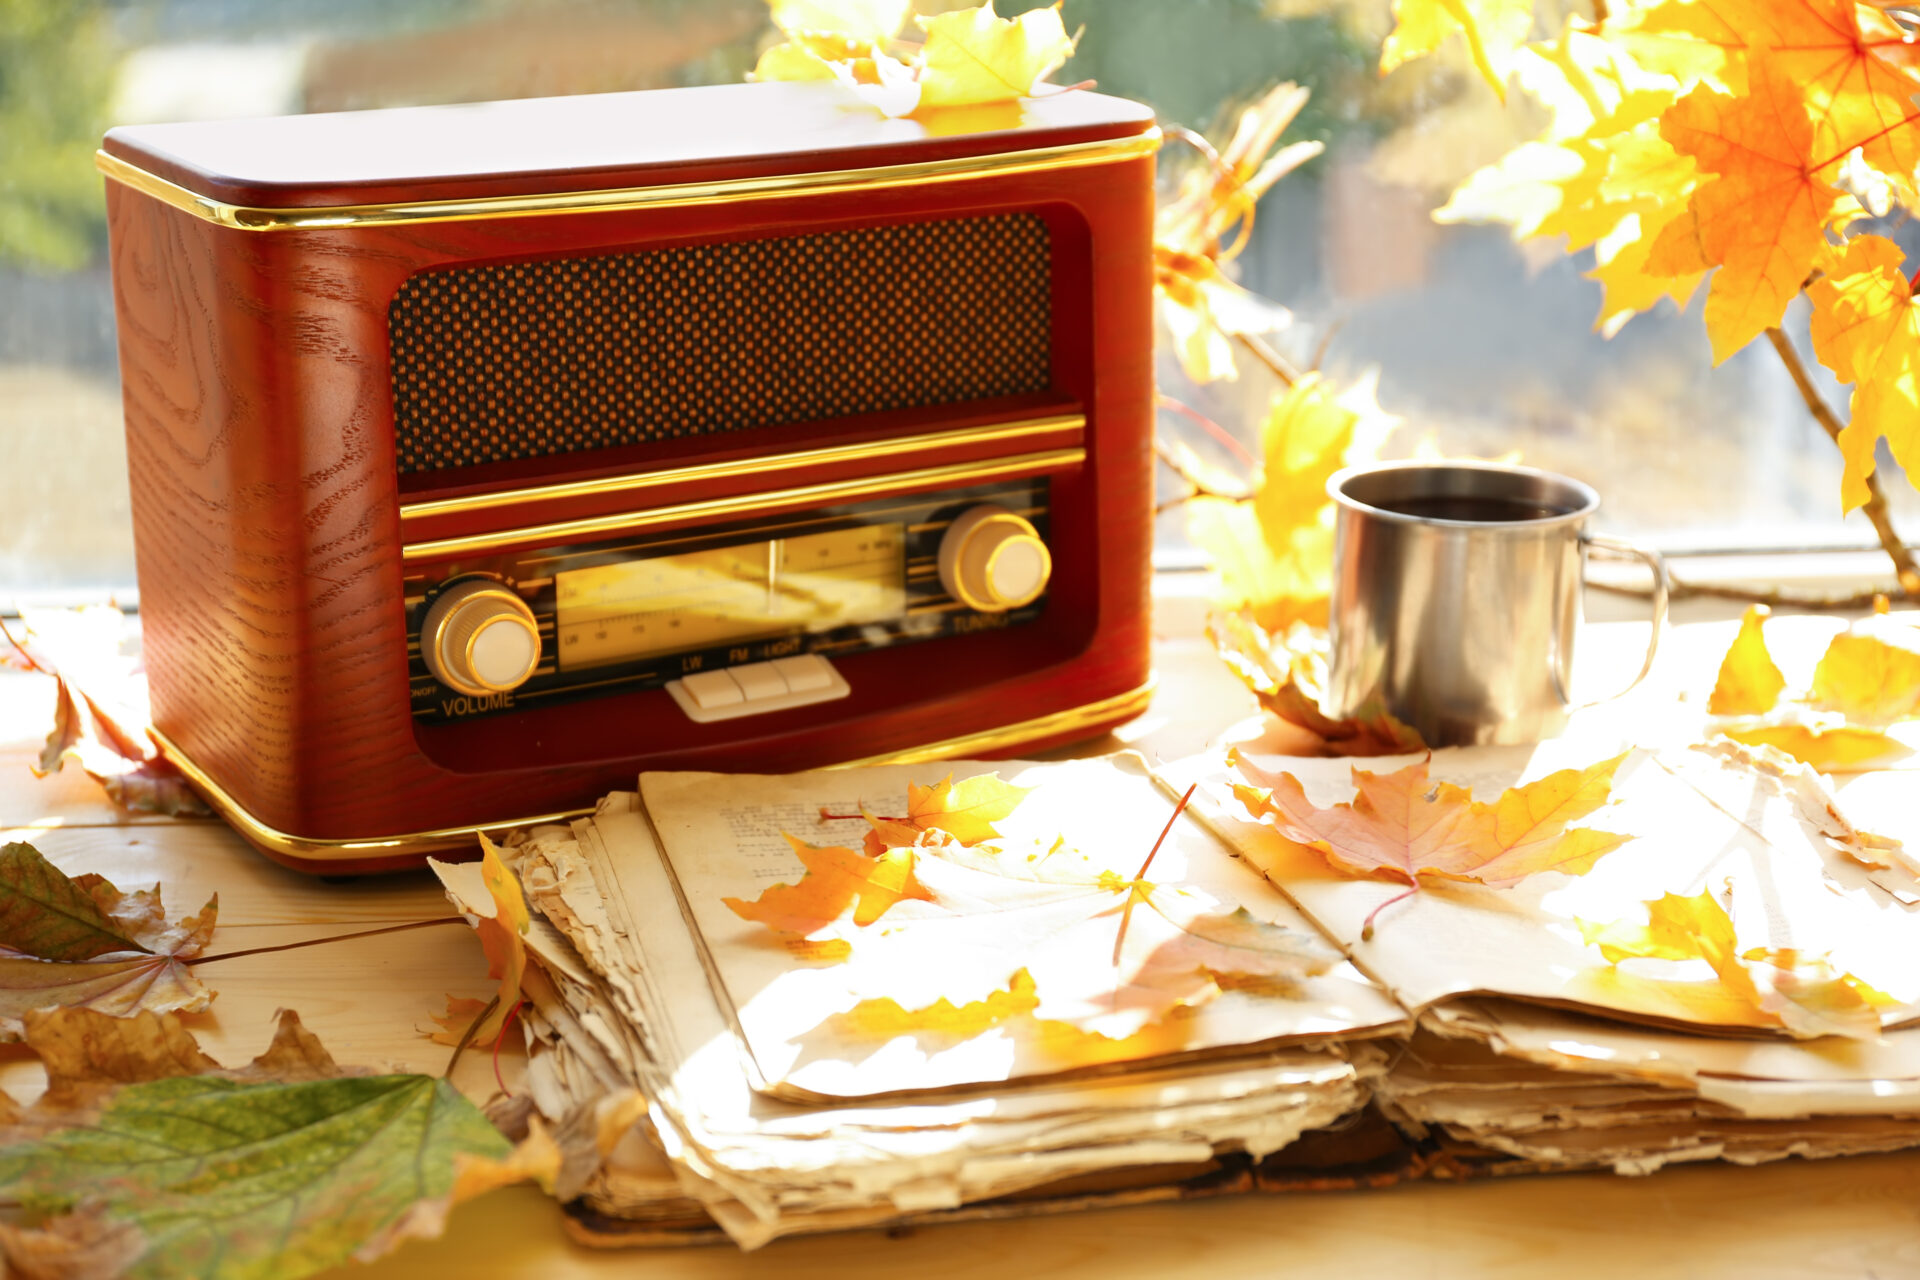 窓辺に置かれた古いラジオと本、カップと紅葉